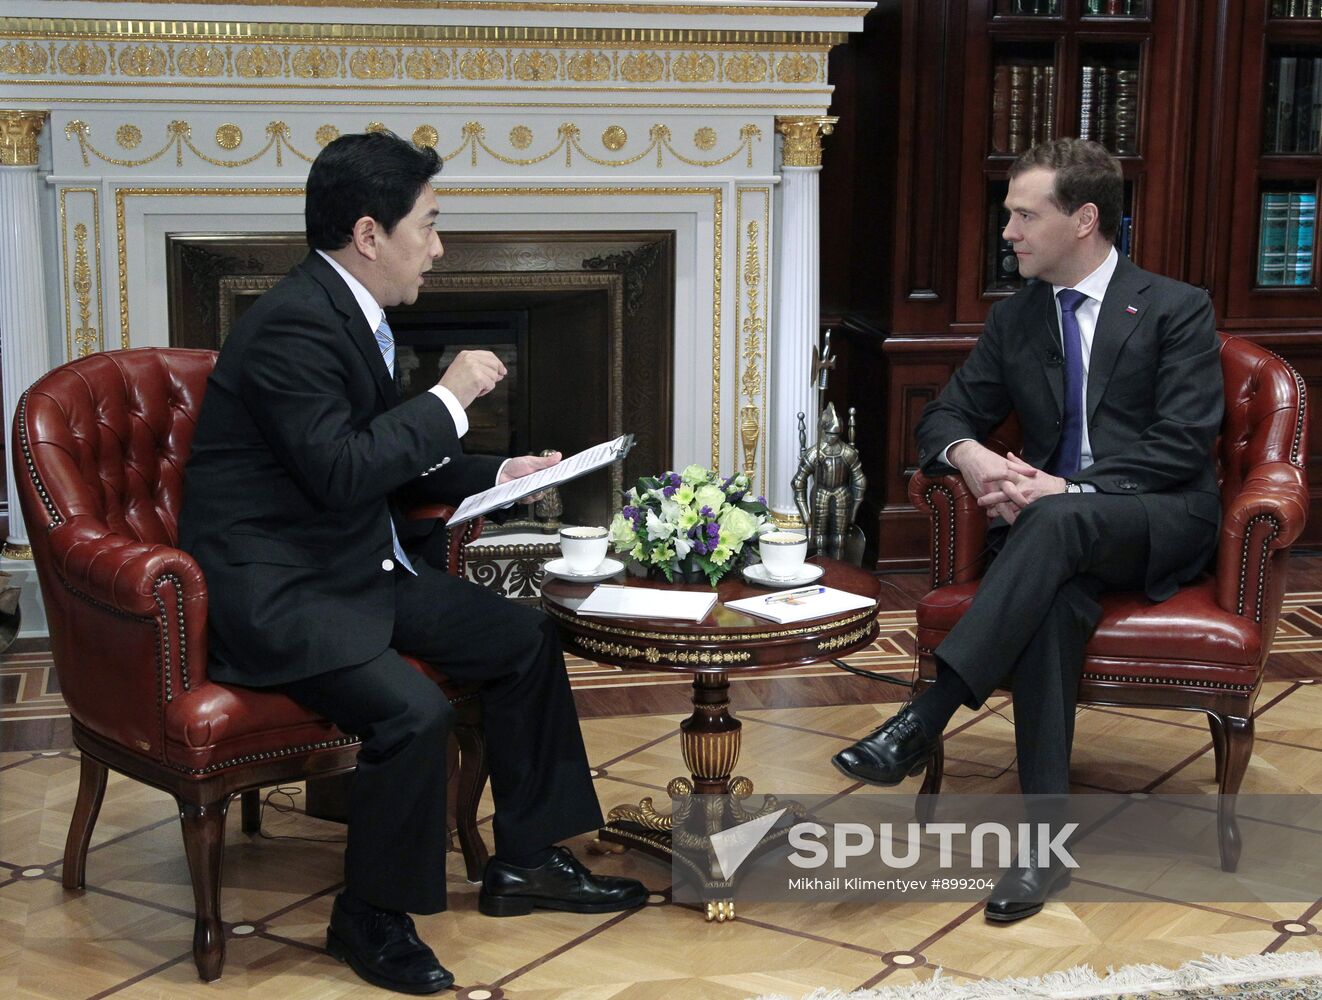 Dmitry Medvedev interviewed by CCTV